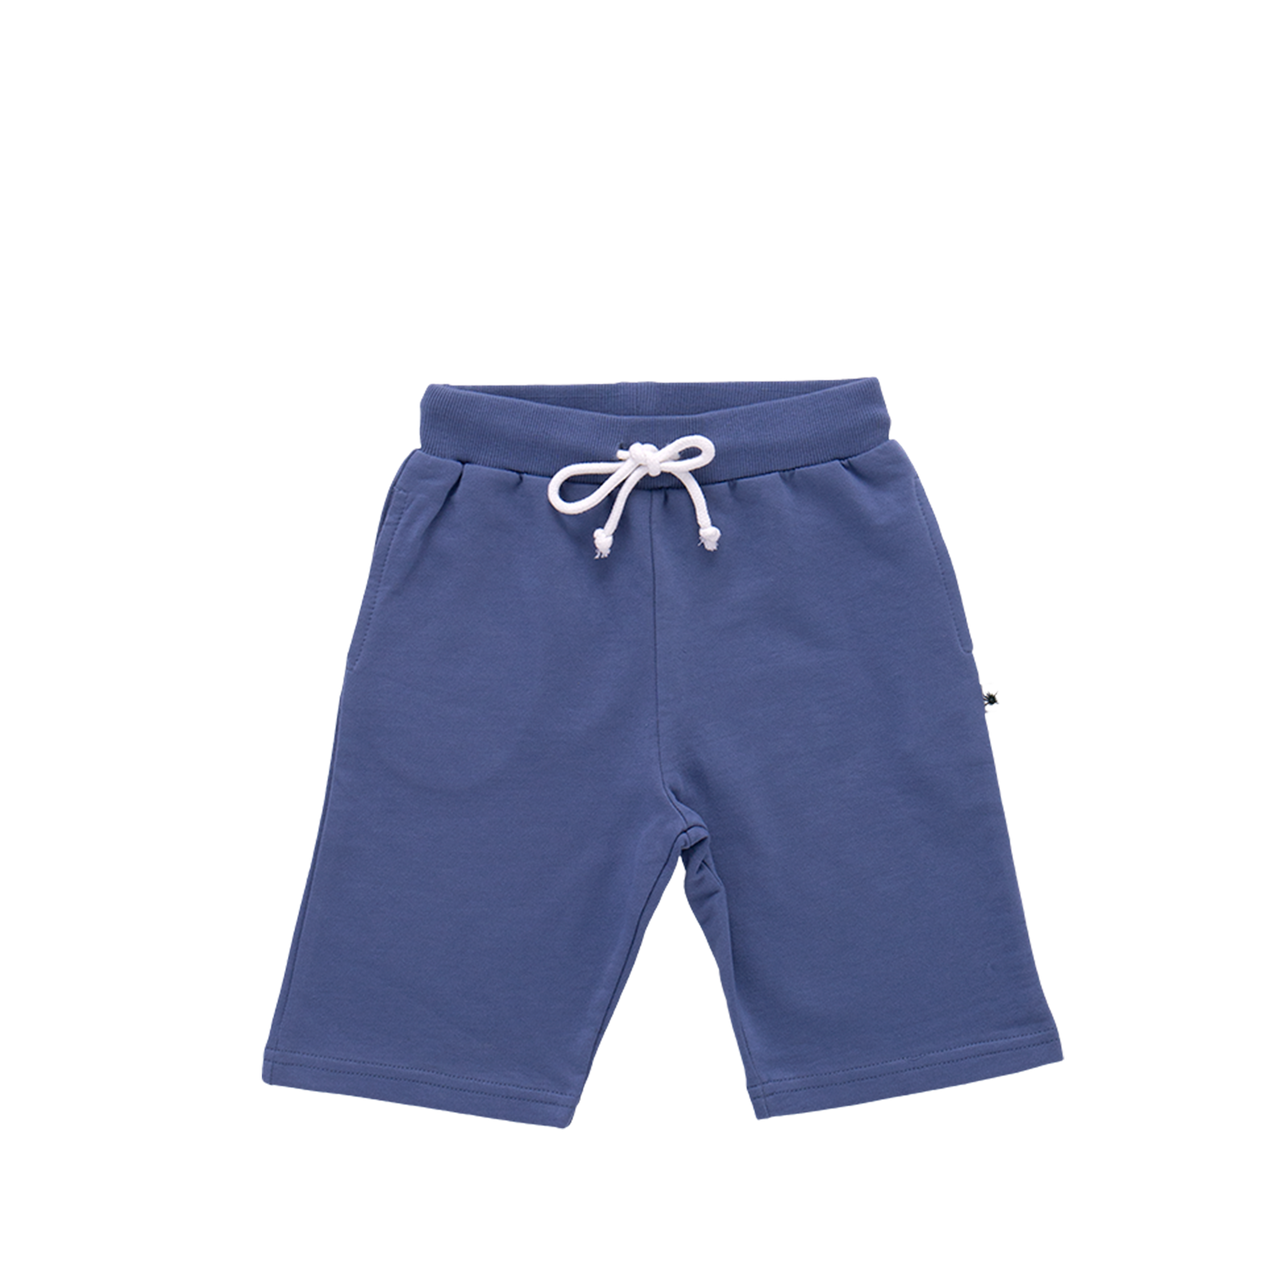 "Bermuda" Shorts - Midnight Blue